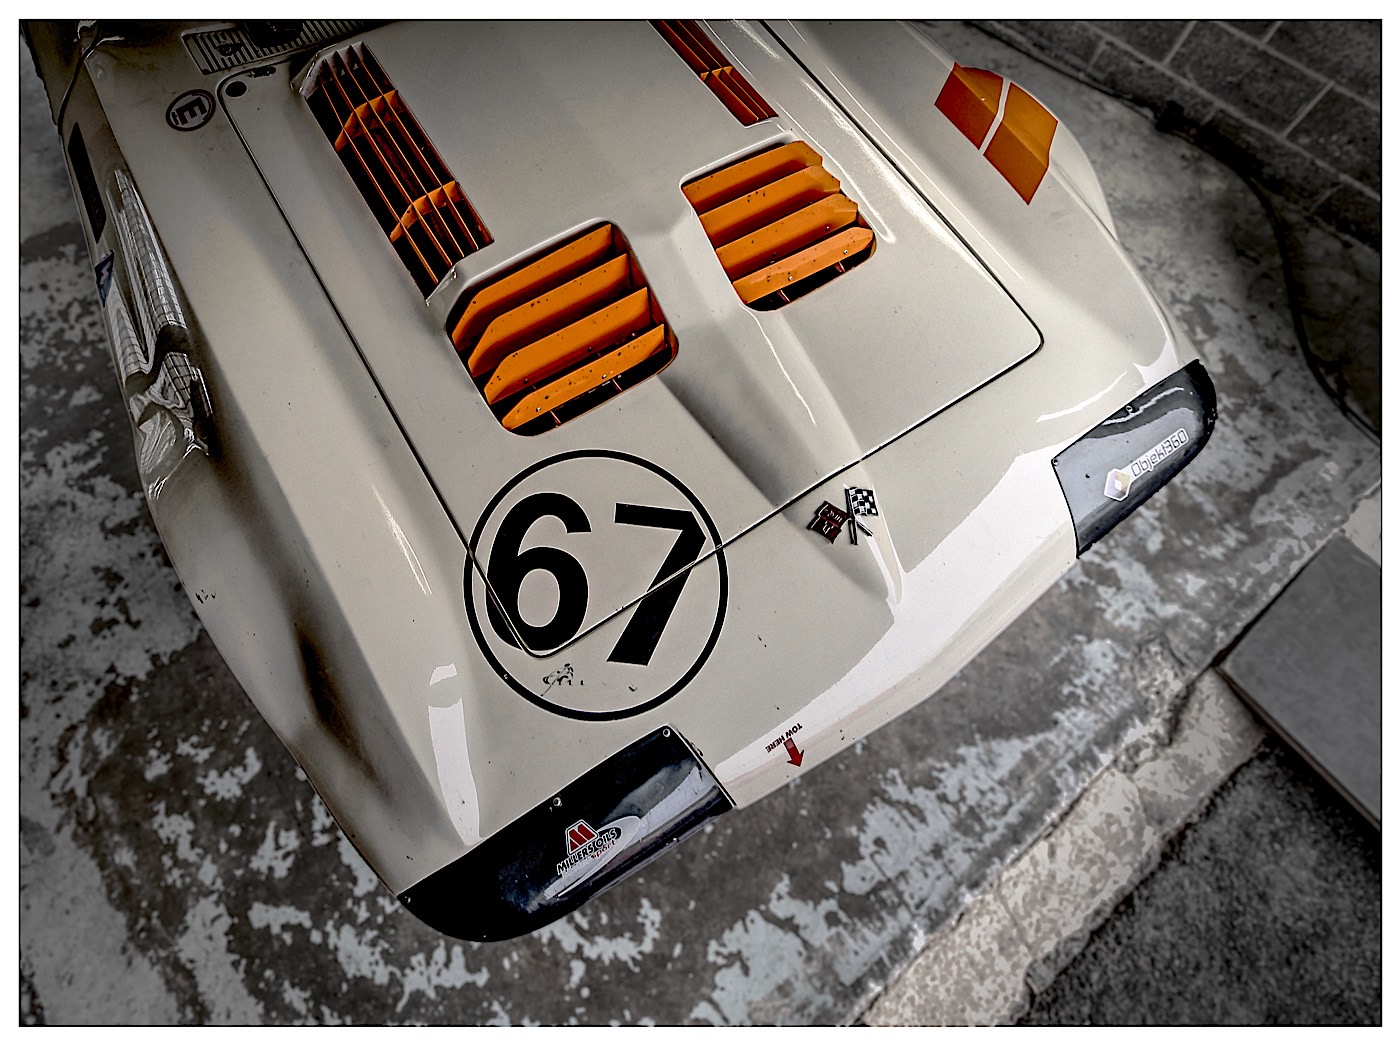 Corvette 67